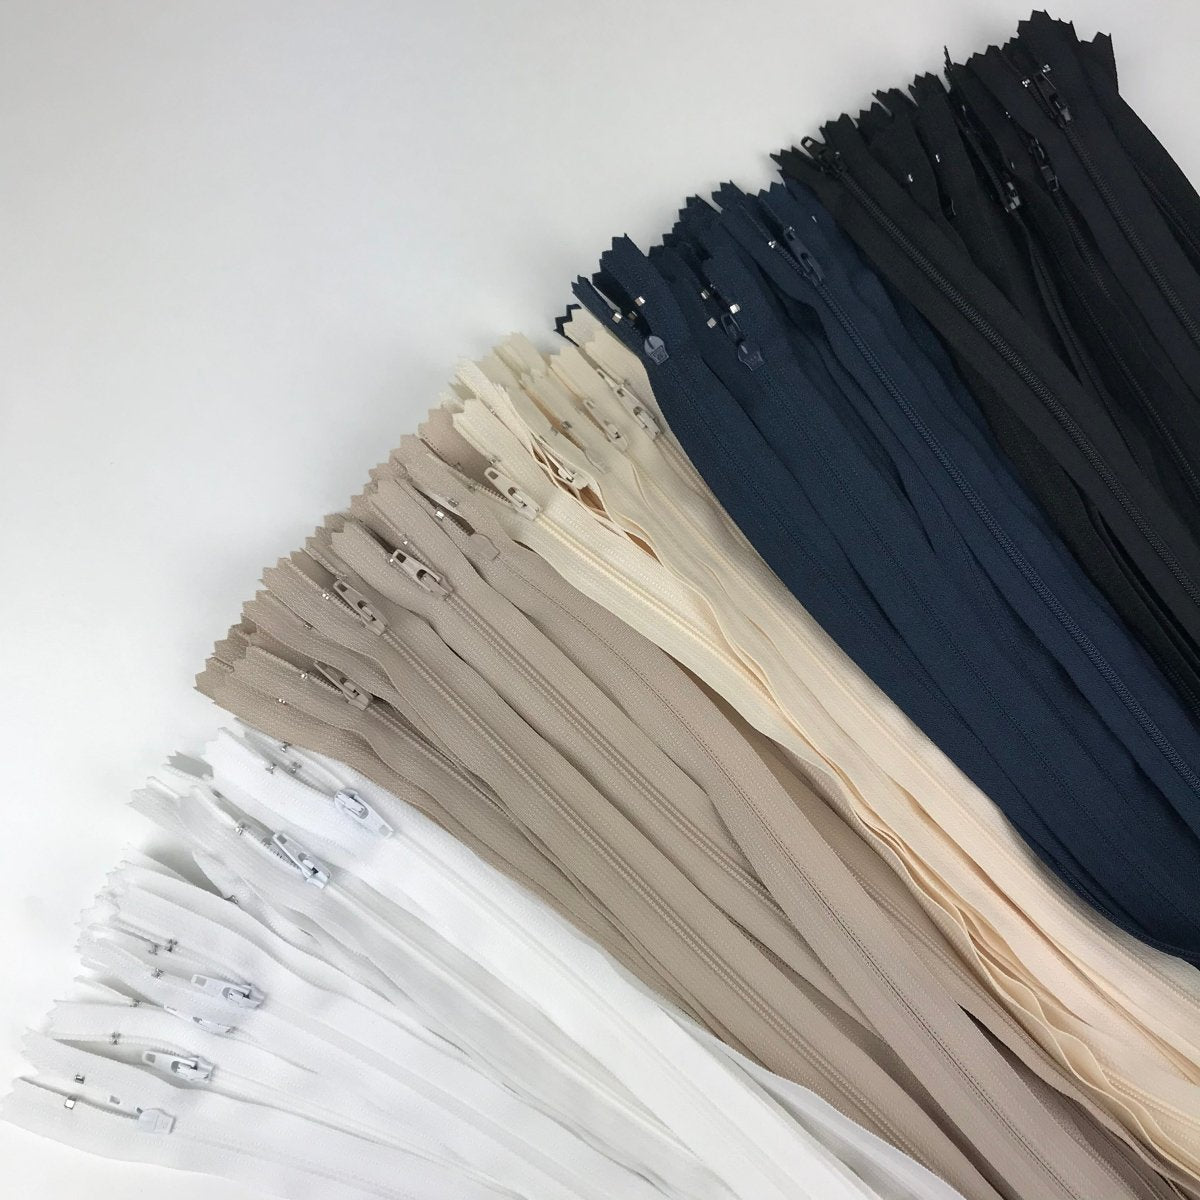 YKK Zipper - Skirt and Dress - 40.5cm (16") - Sewing Gem